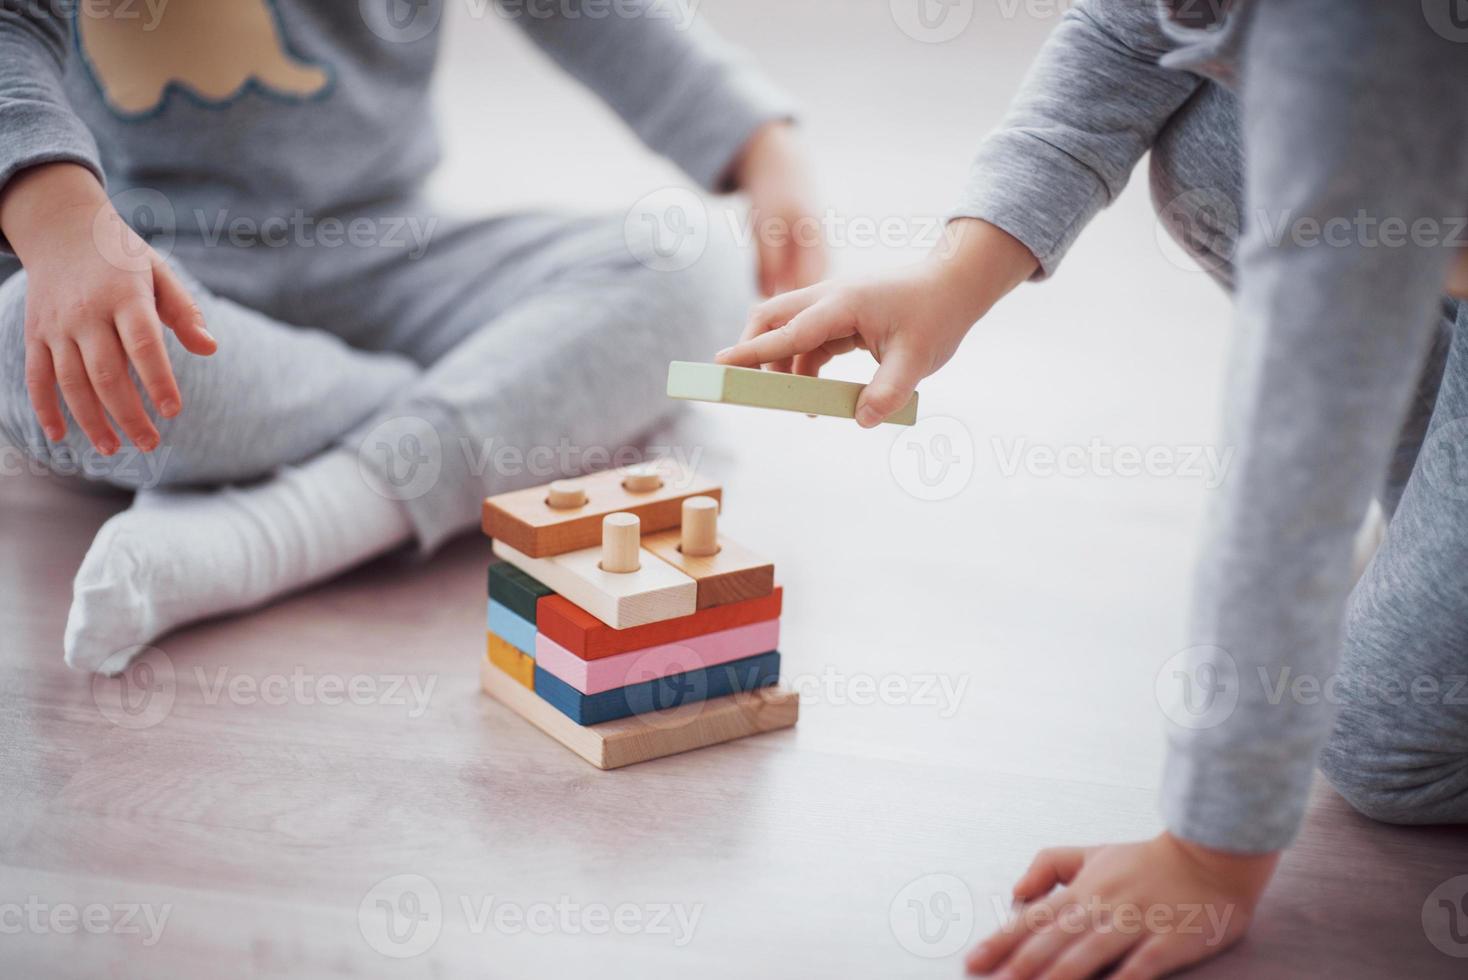 Los niños juegan con un diseñador de juguetes en el piso de la habitación de los niños. dos niños jugando con bloques de colores. juegos educativos de jardín de infantes foto